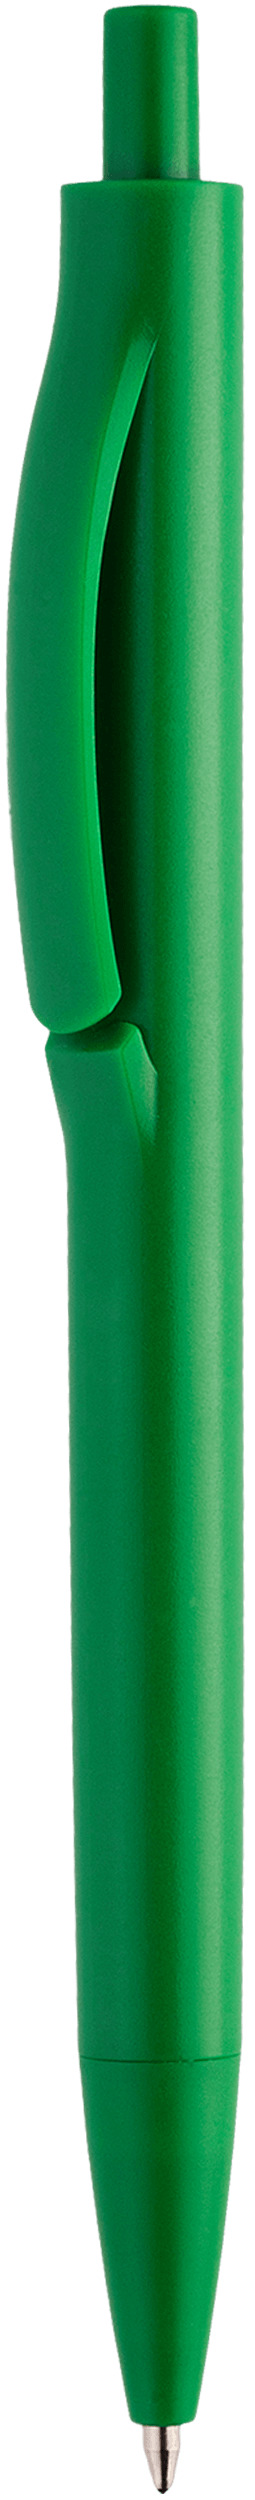 Шариковая ручка Igla Color, салатовая